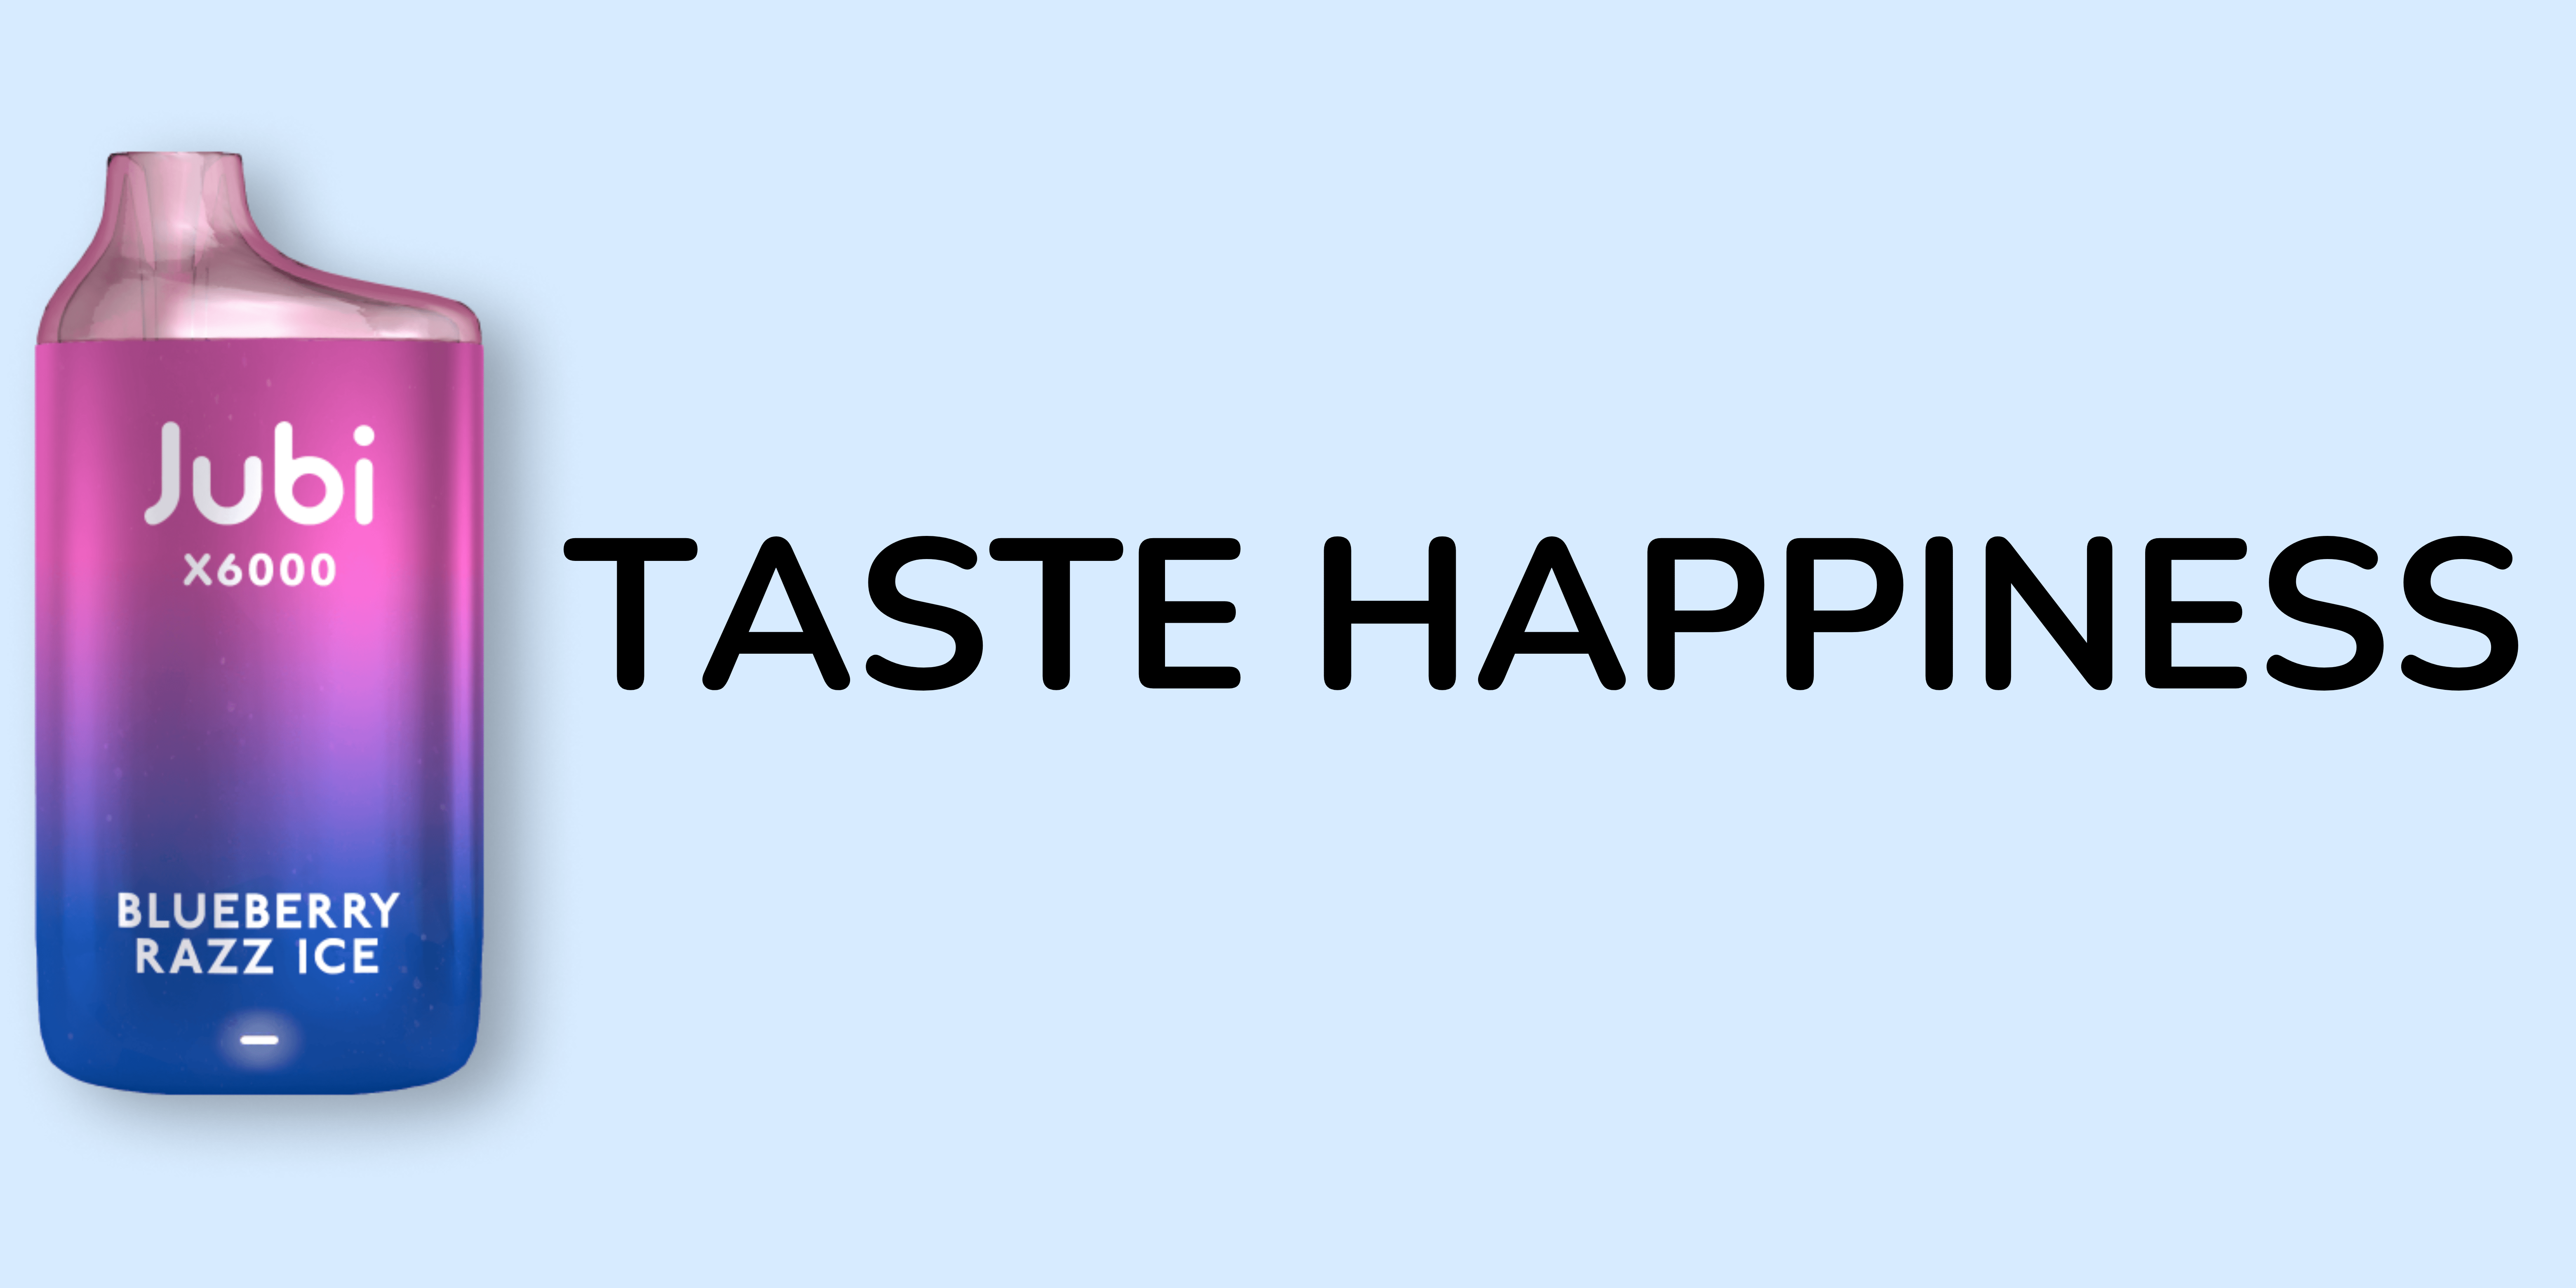 TASTE HAPPINESS